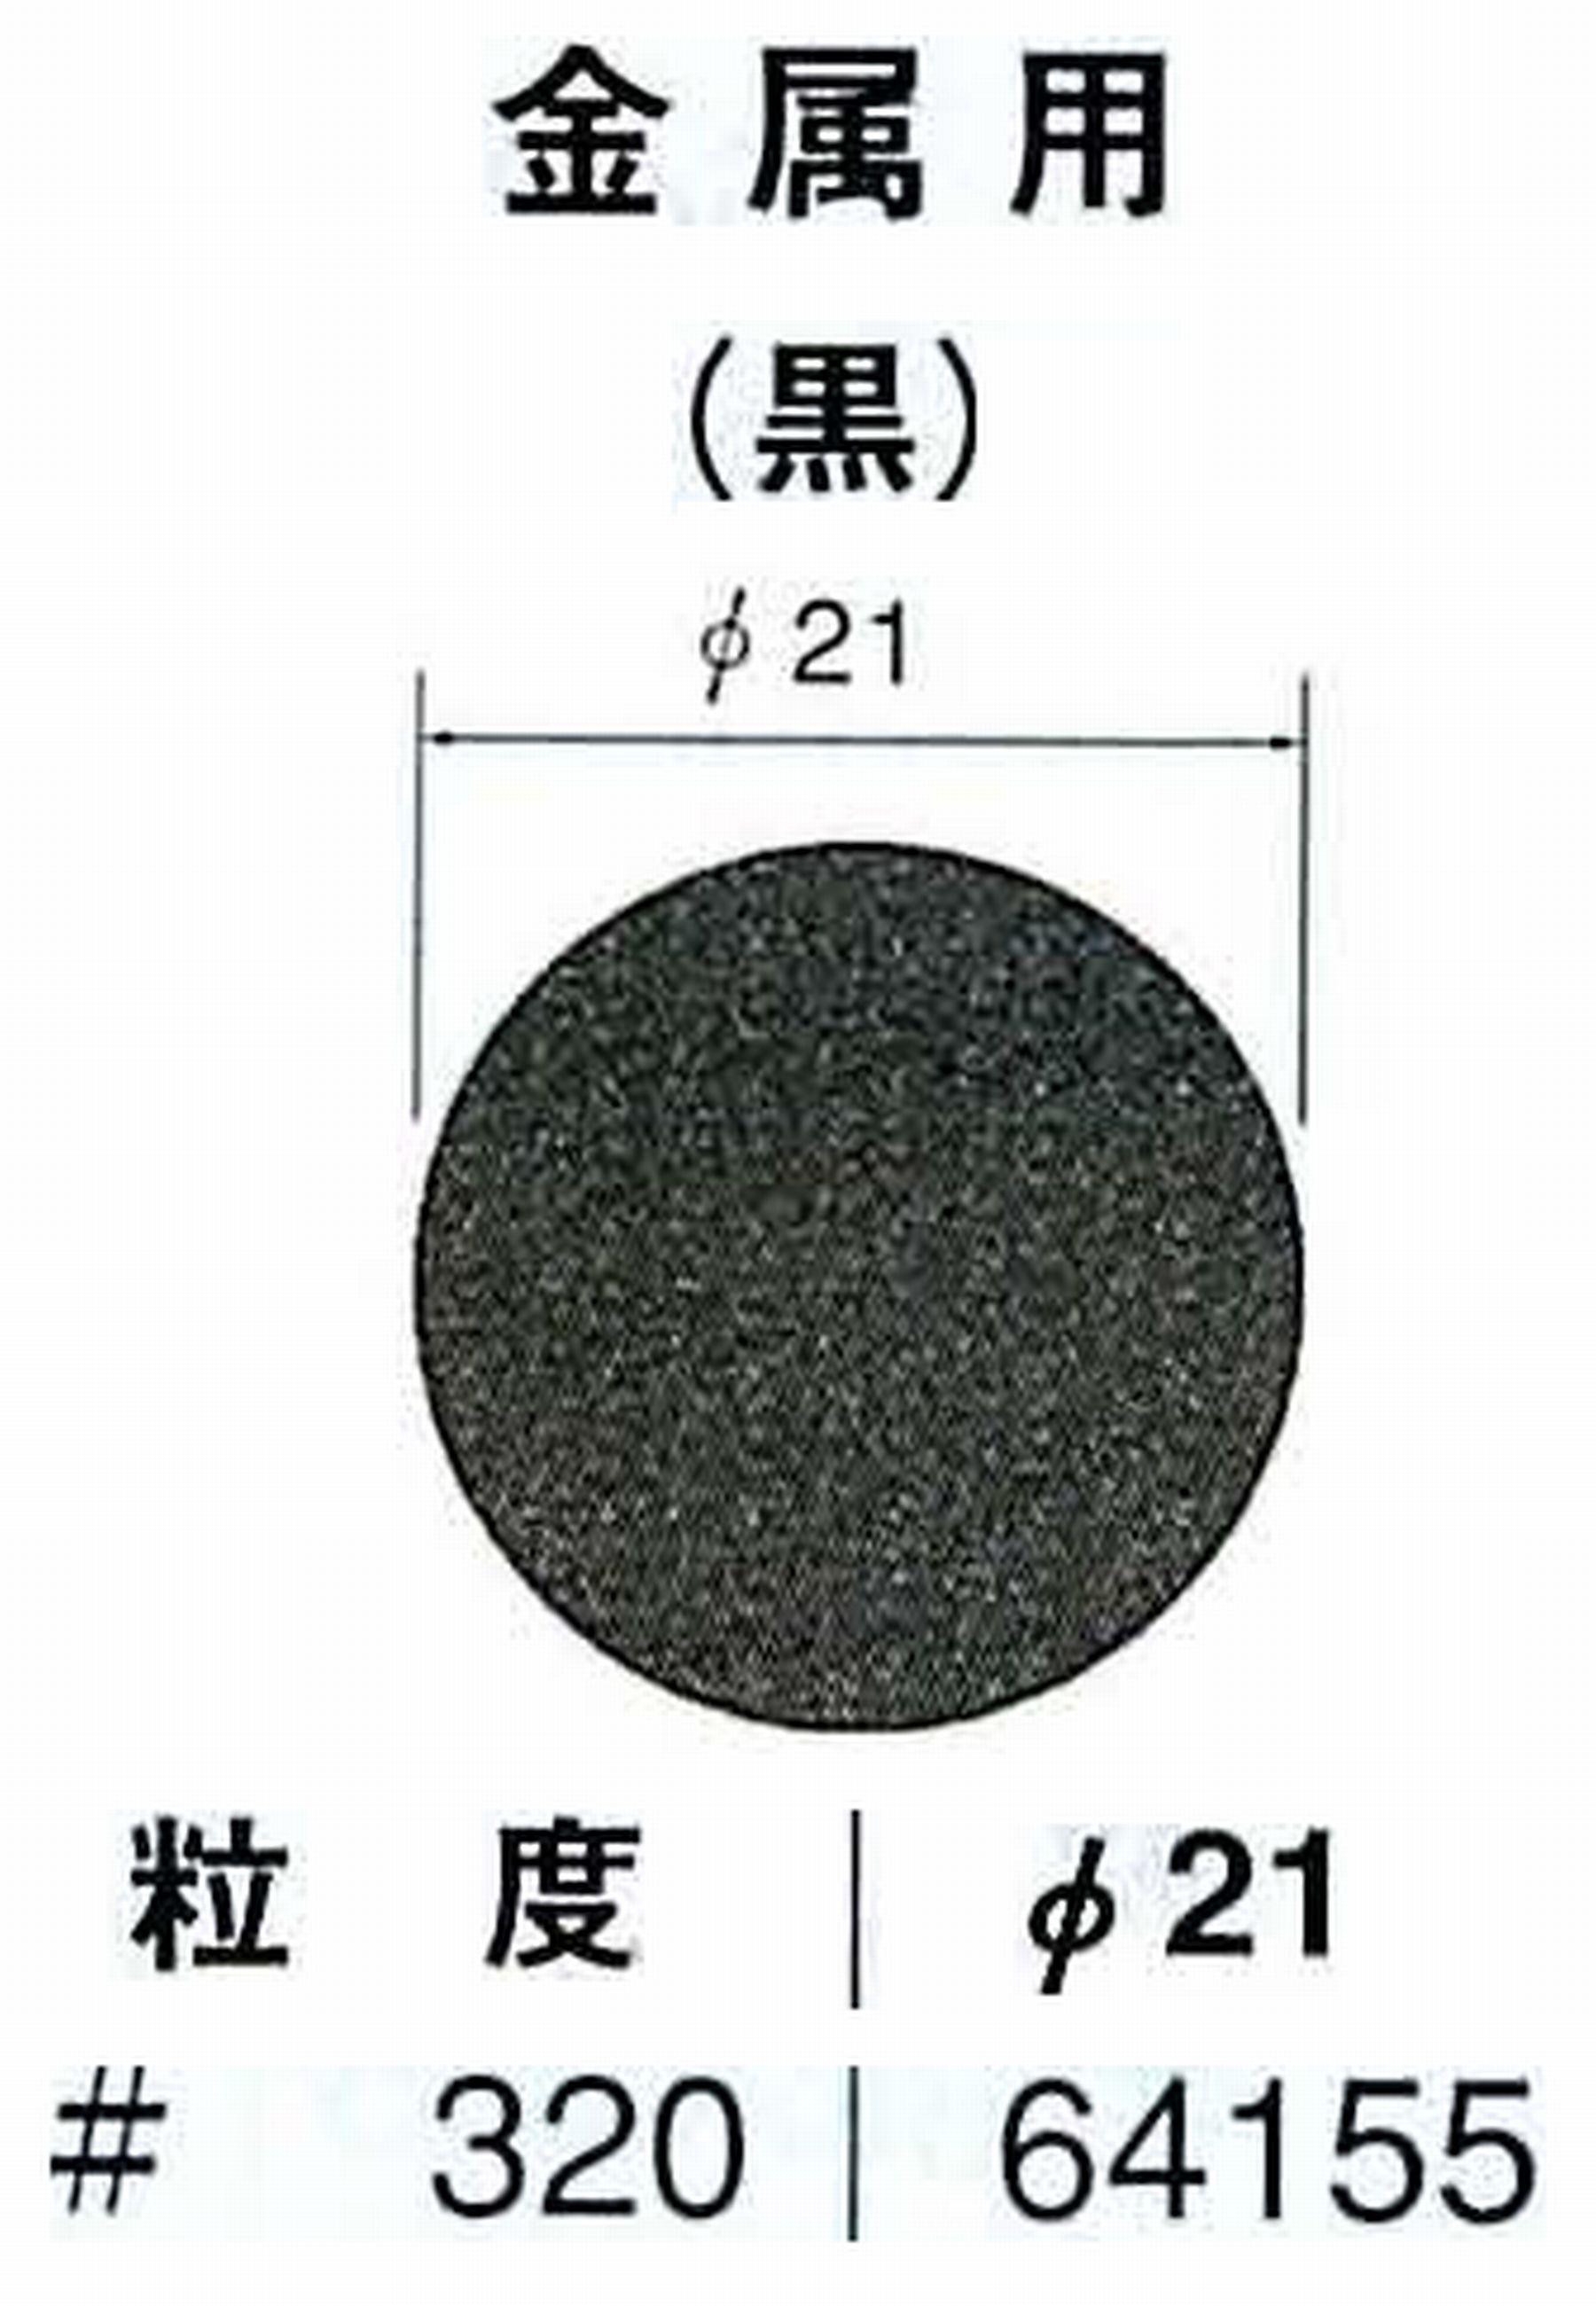 ナカニシ/NAKANISHI アングルグラインダ(電動・エアー) アングルアタッチメント専用工具 サンドペーパーディスク(紙基材タイプ)裏面のり処理 64155